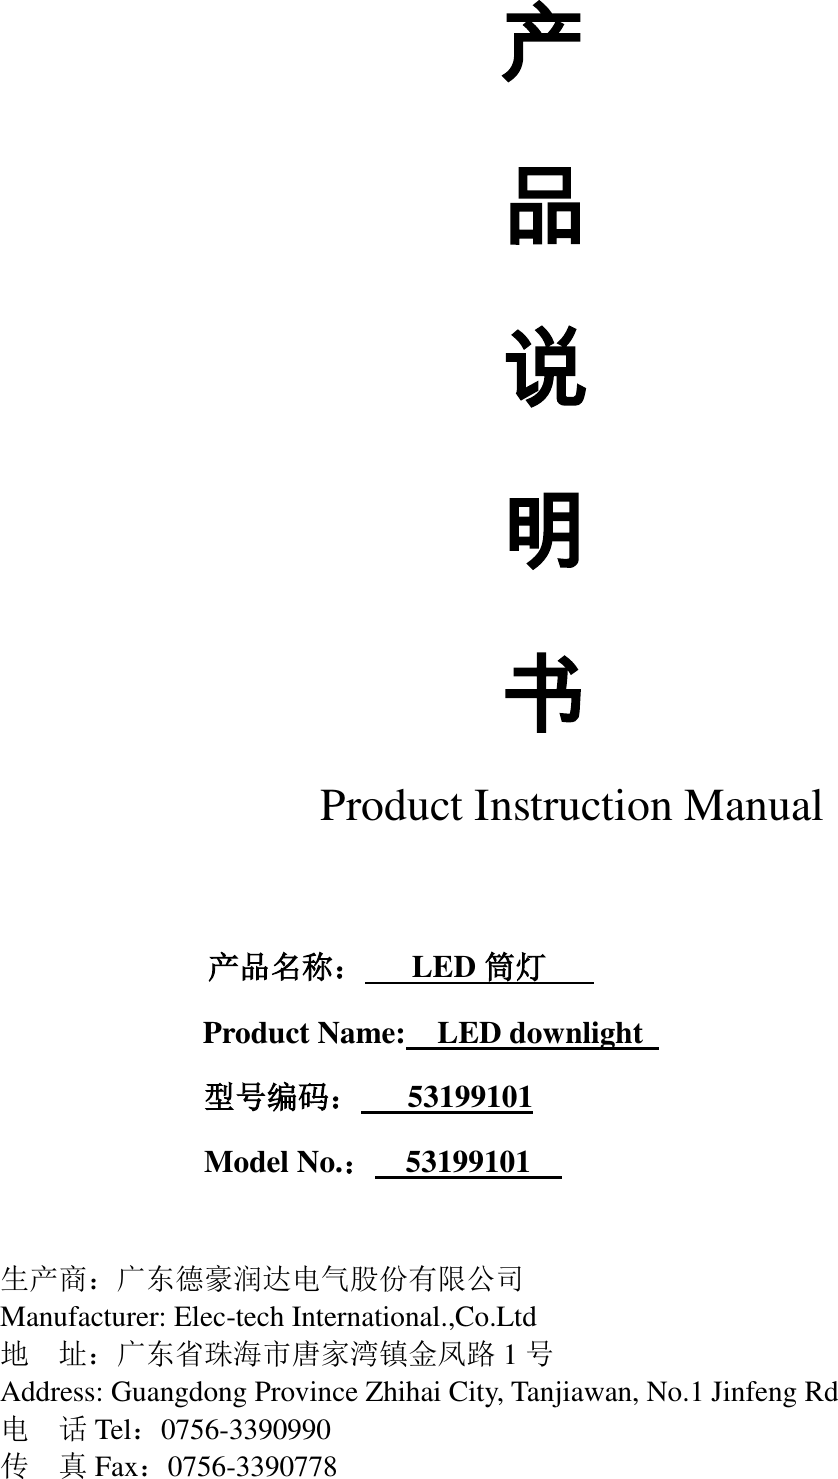         产 品 说 明 书 Product Instruction Manual                      产品名称：   LED 筒灯    Product Name:  LED downlight                型号编码：   53199101 Model No.：  53199101      生产商：广东德豪润达电气股份有限公司 Manufacturer: Elec-tech International.,Co.Ltd 地  址：广东省珠海市唐家湾镇金凤路 1号 Address: Guangdong Province Zhihai City, Tanjiawan, No.1 Jinfeng Rd   电  话Tel：0756-3390990 传  真Fax：0756-3390778 